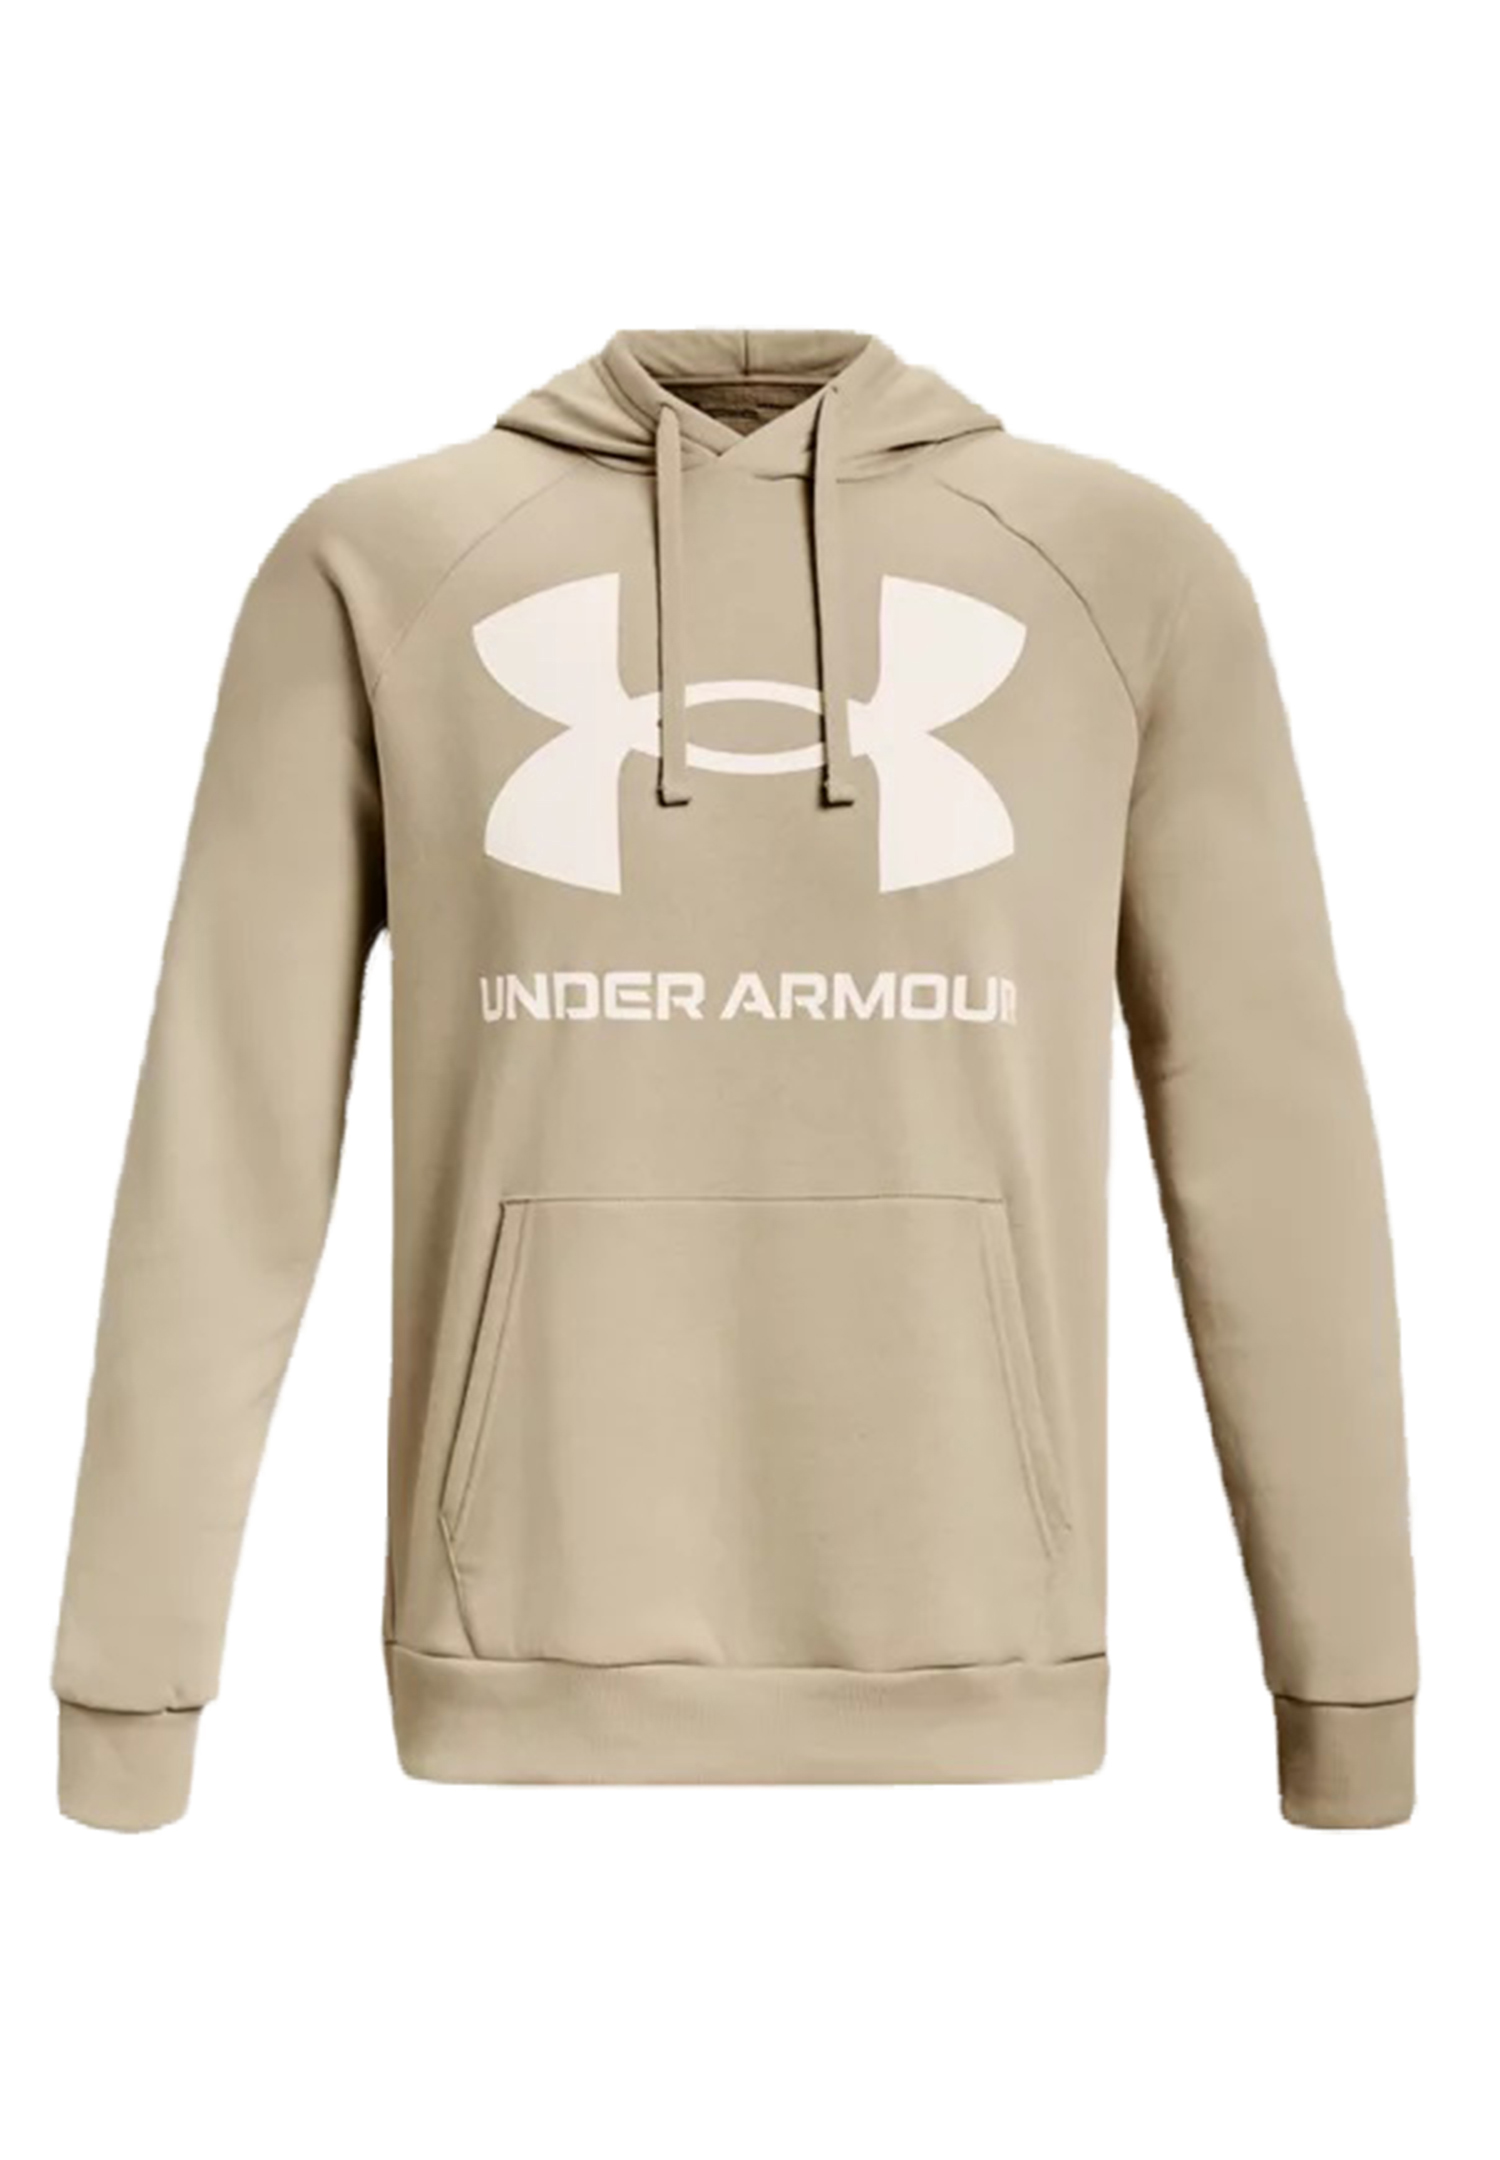 Under Armour Rival Fleece Big Logo Hoodie Herren Sweatshirt 1357093 290 khaki 